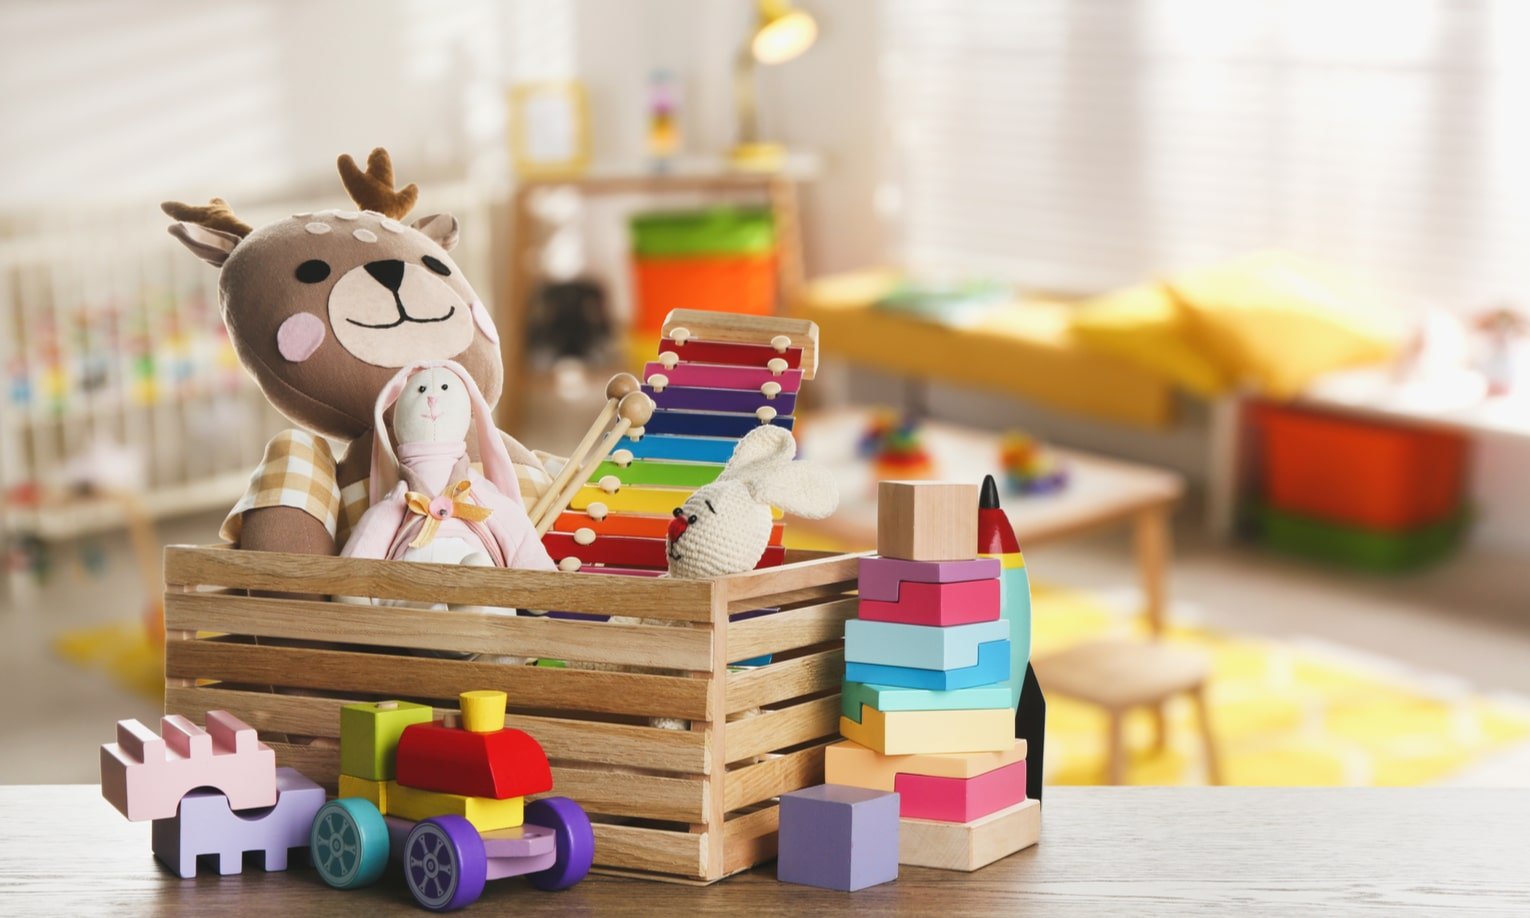 детские игрушки сложены в коробку